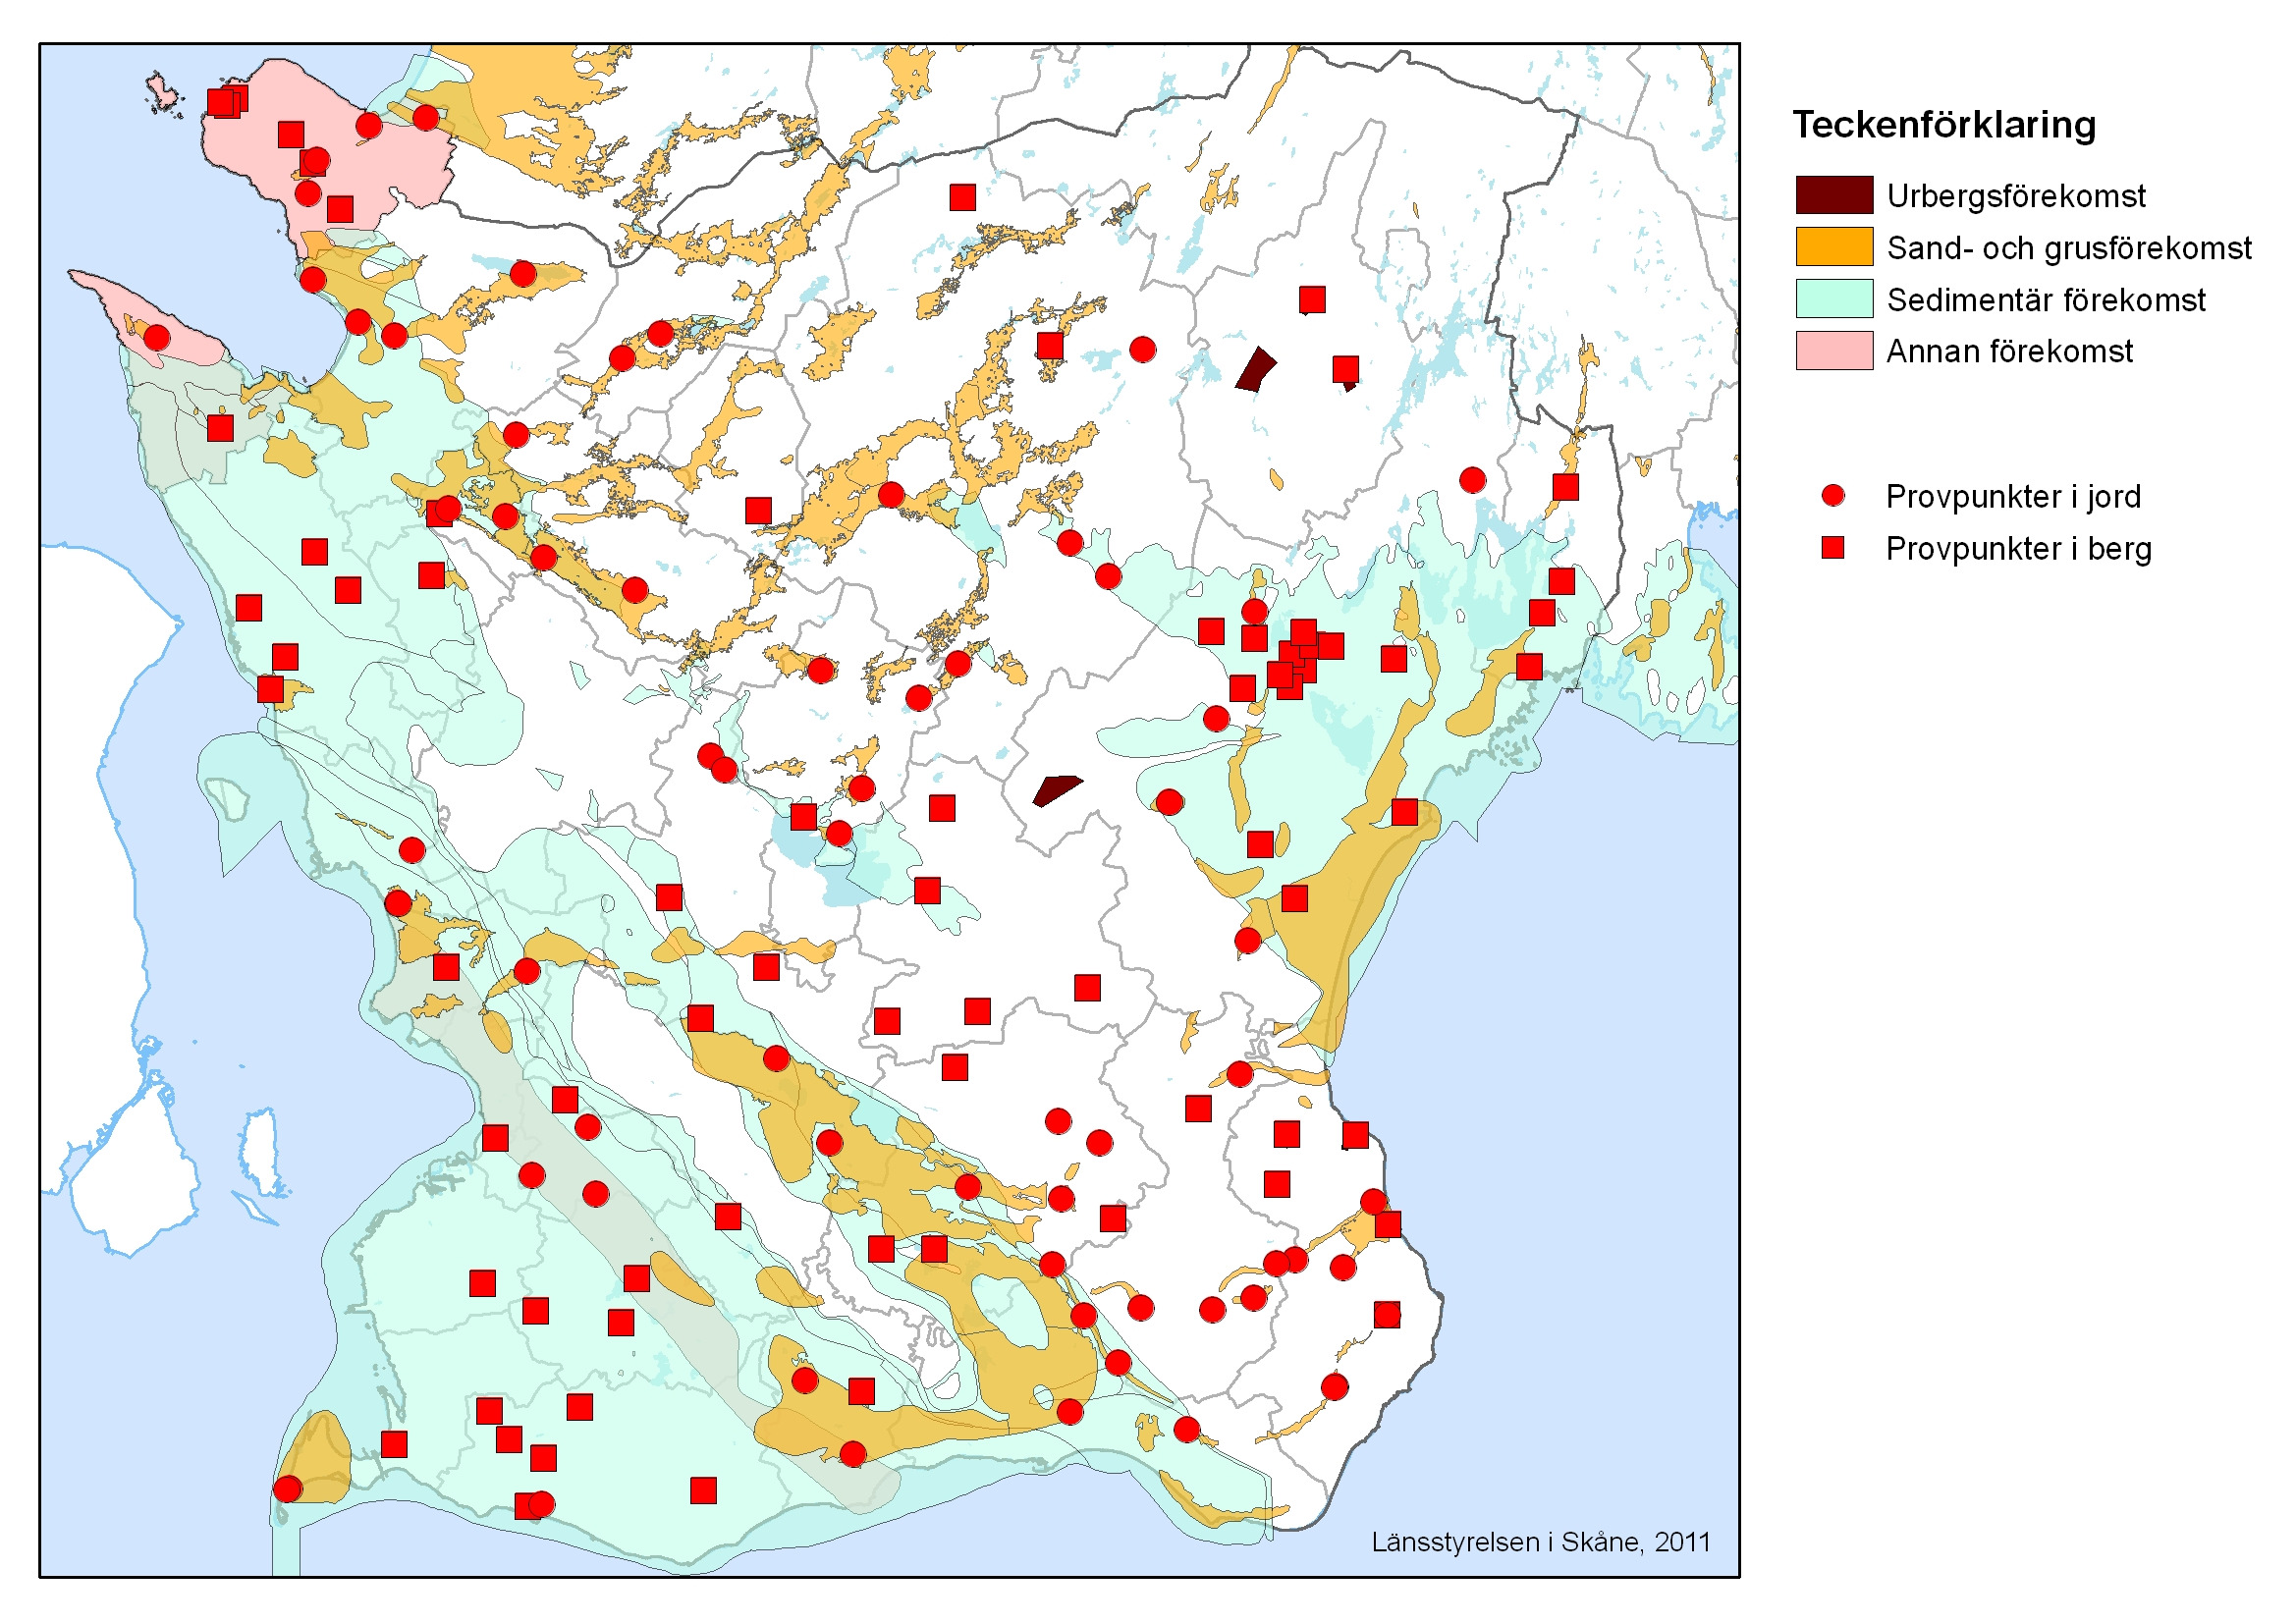 Miljöövervakning av grundvatten - fokus bekämpningsmedel 119 kommunala täkter 8 enskilda brunnar